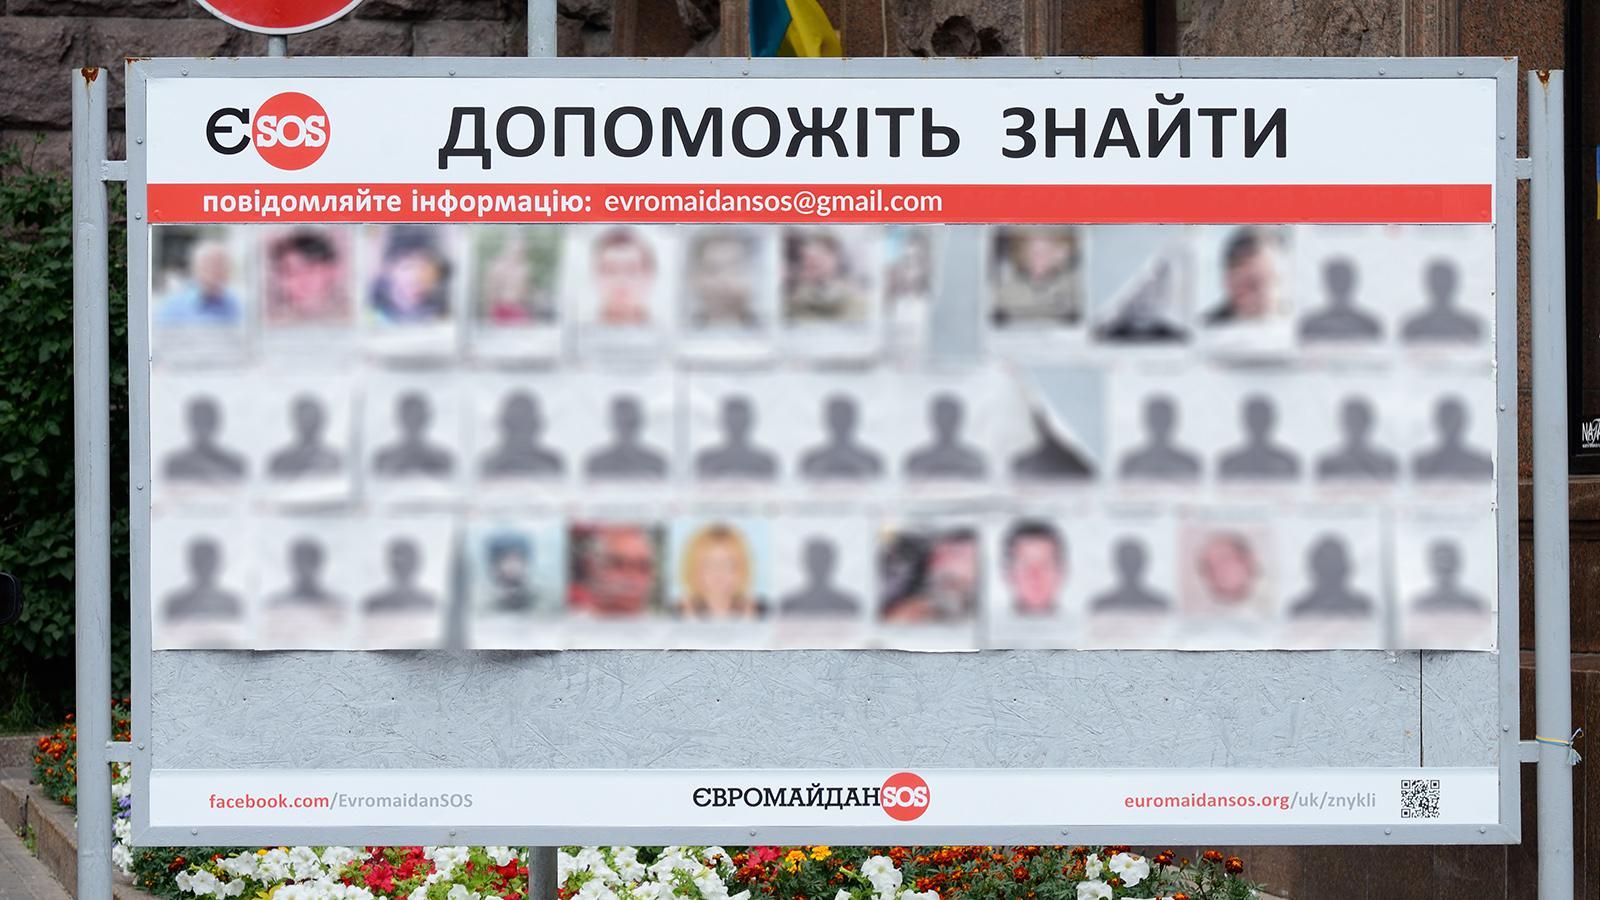 Майже 50 активістів Євромайдану досі не знайдено (Список)